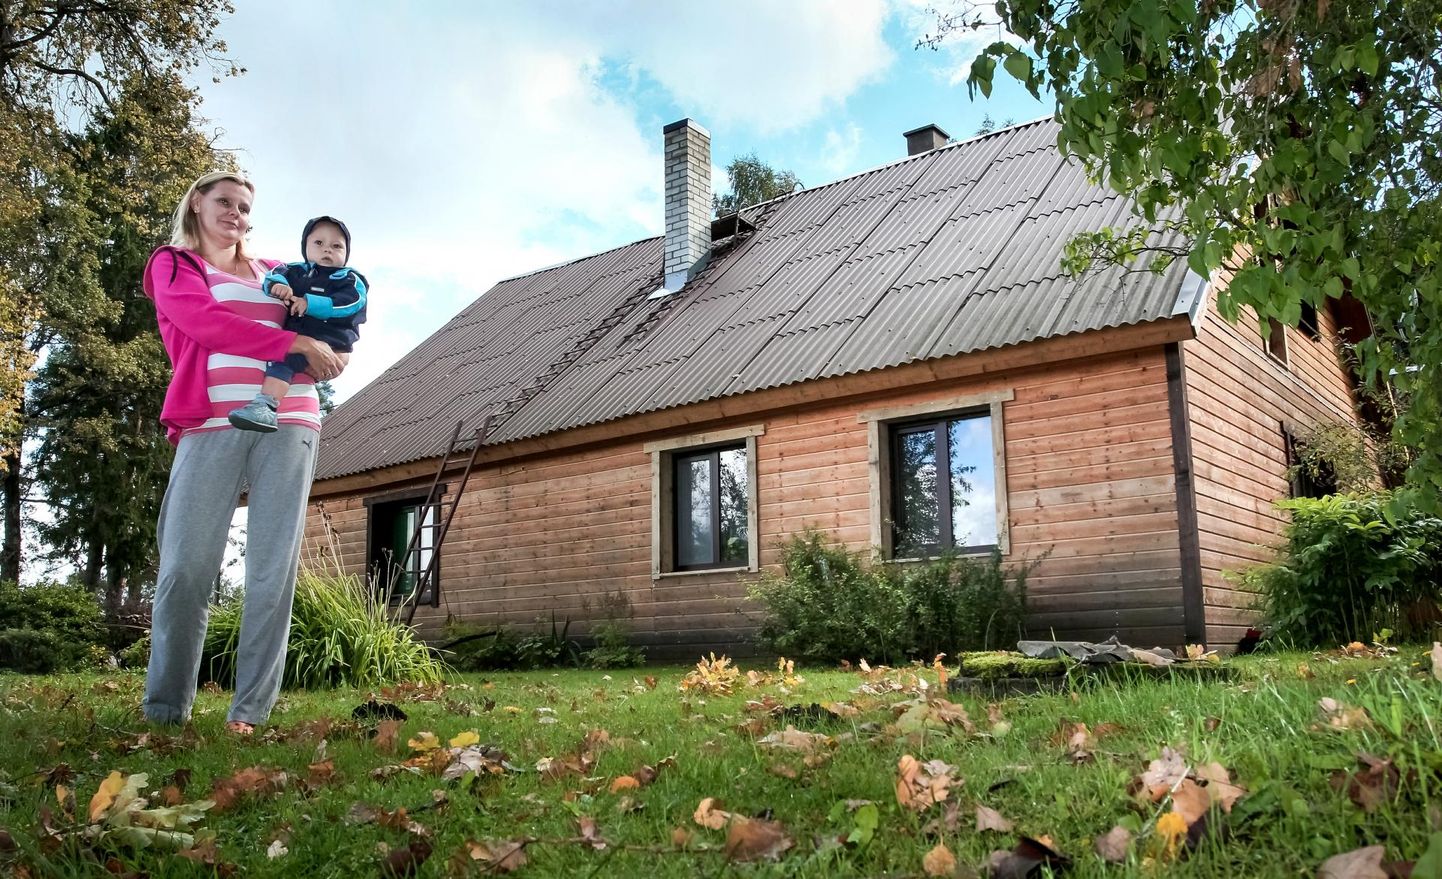 Pildil on suurperede kodutoetusega 2015. aastal korrastatud talu ning selle perenaine Riina Nõmme.